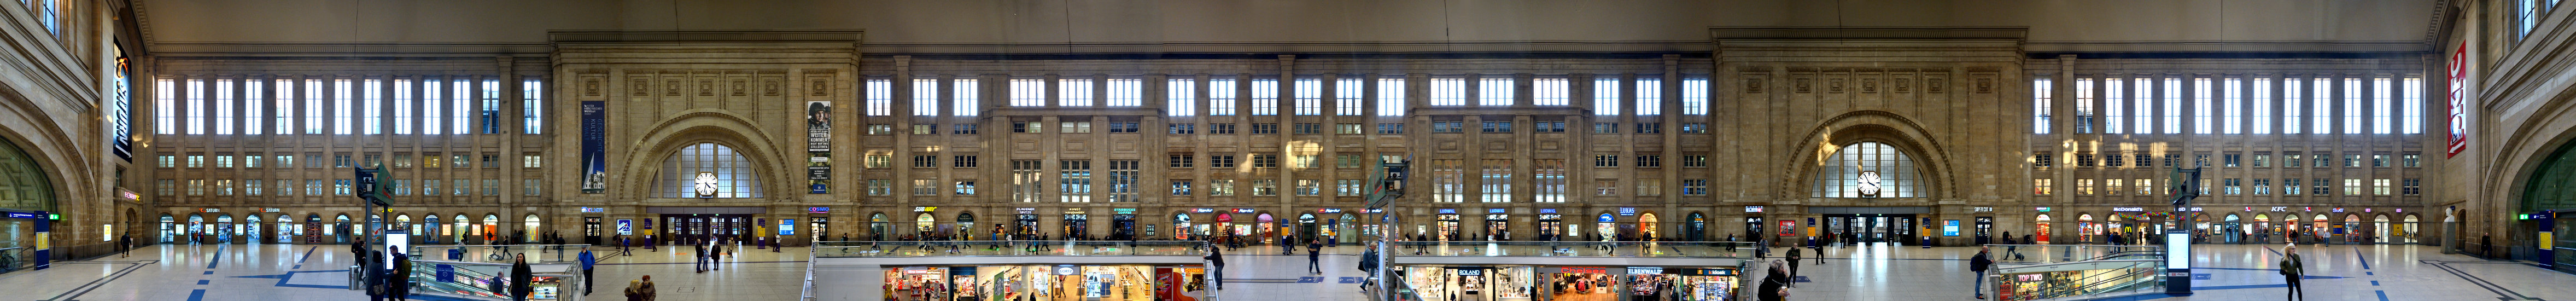 Central Station Leipzig | Concourse Facade